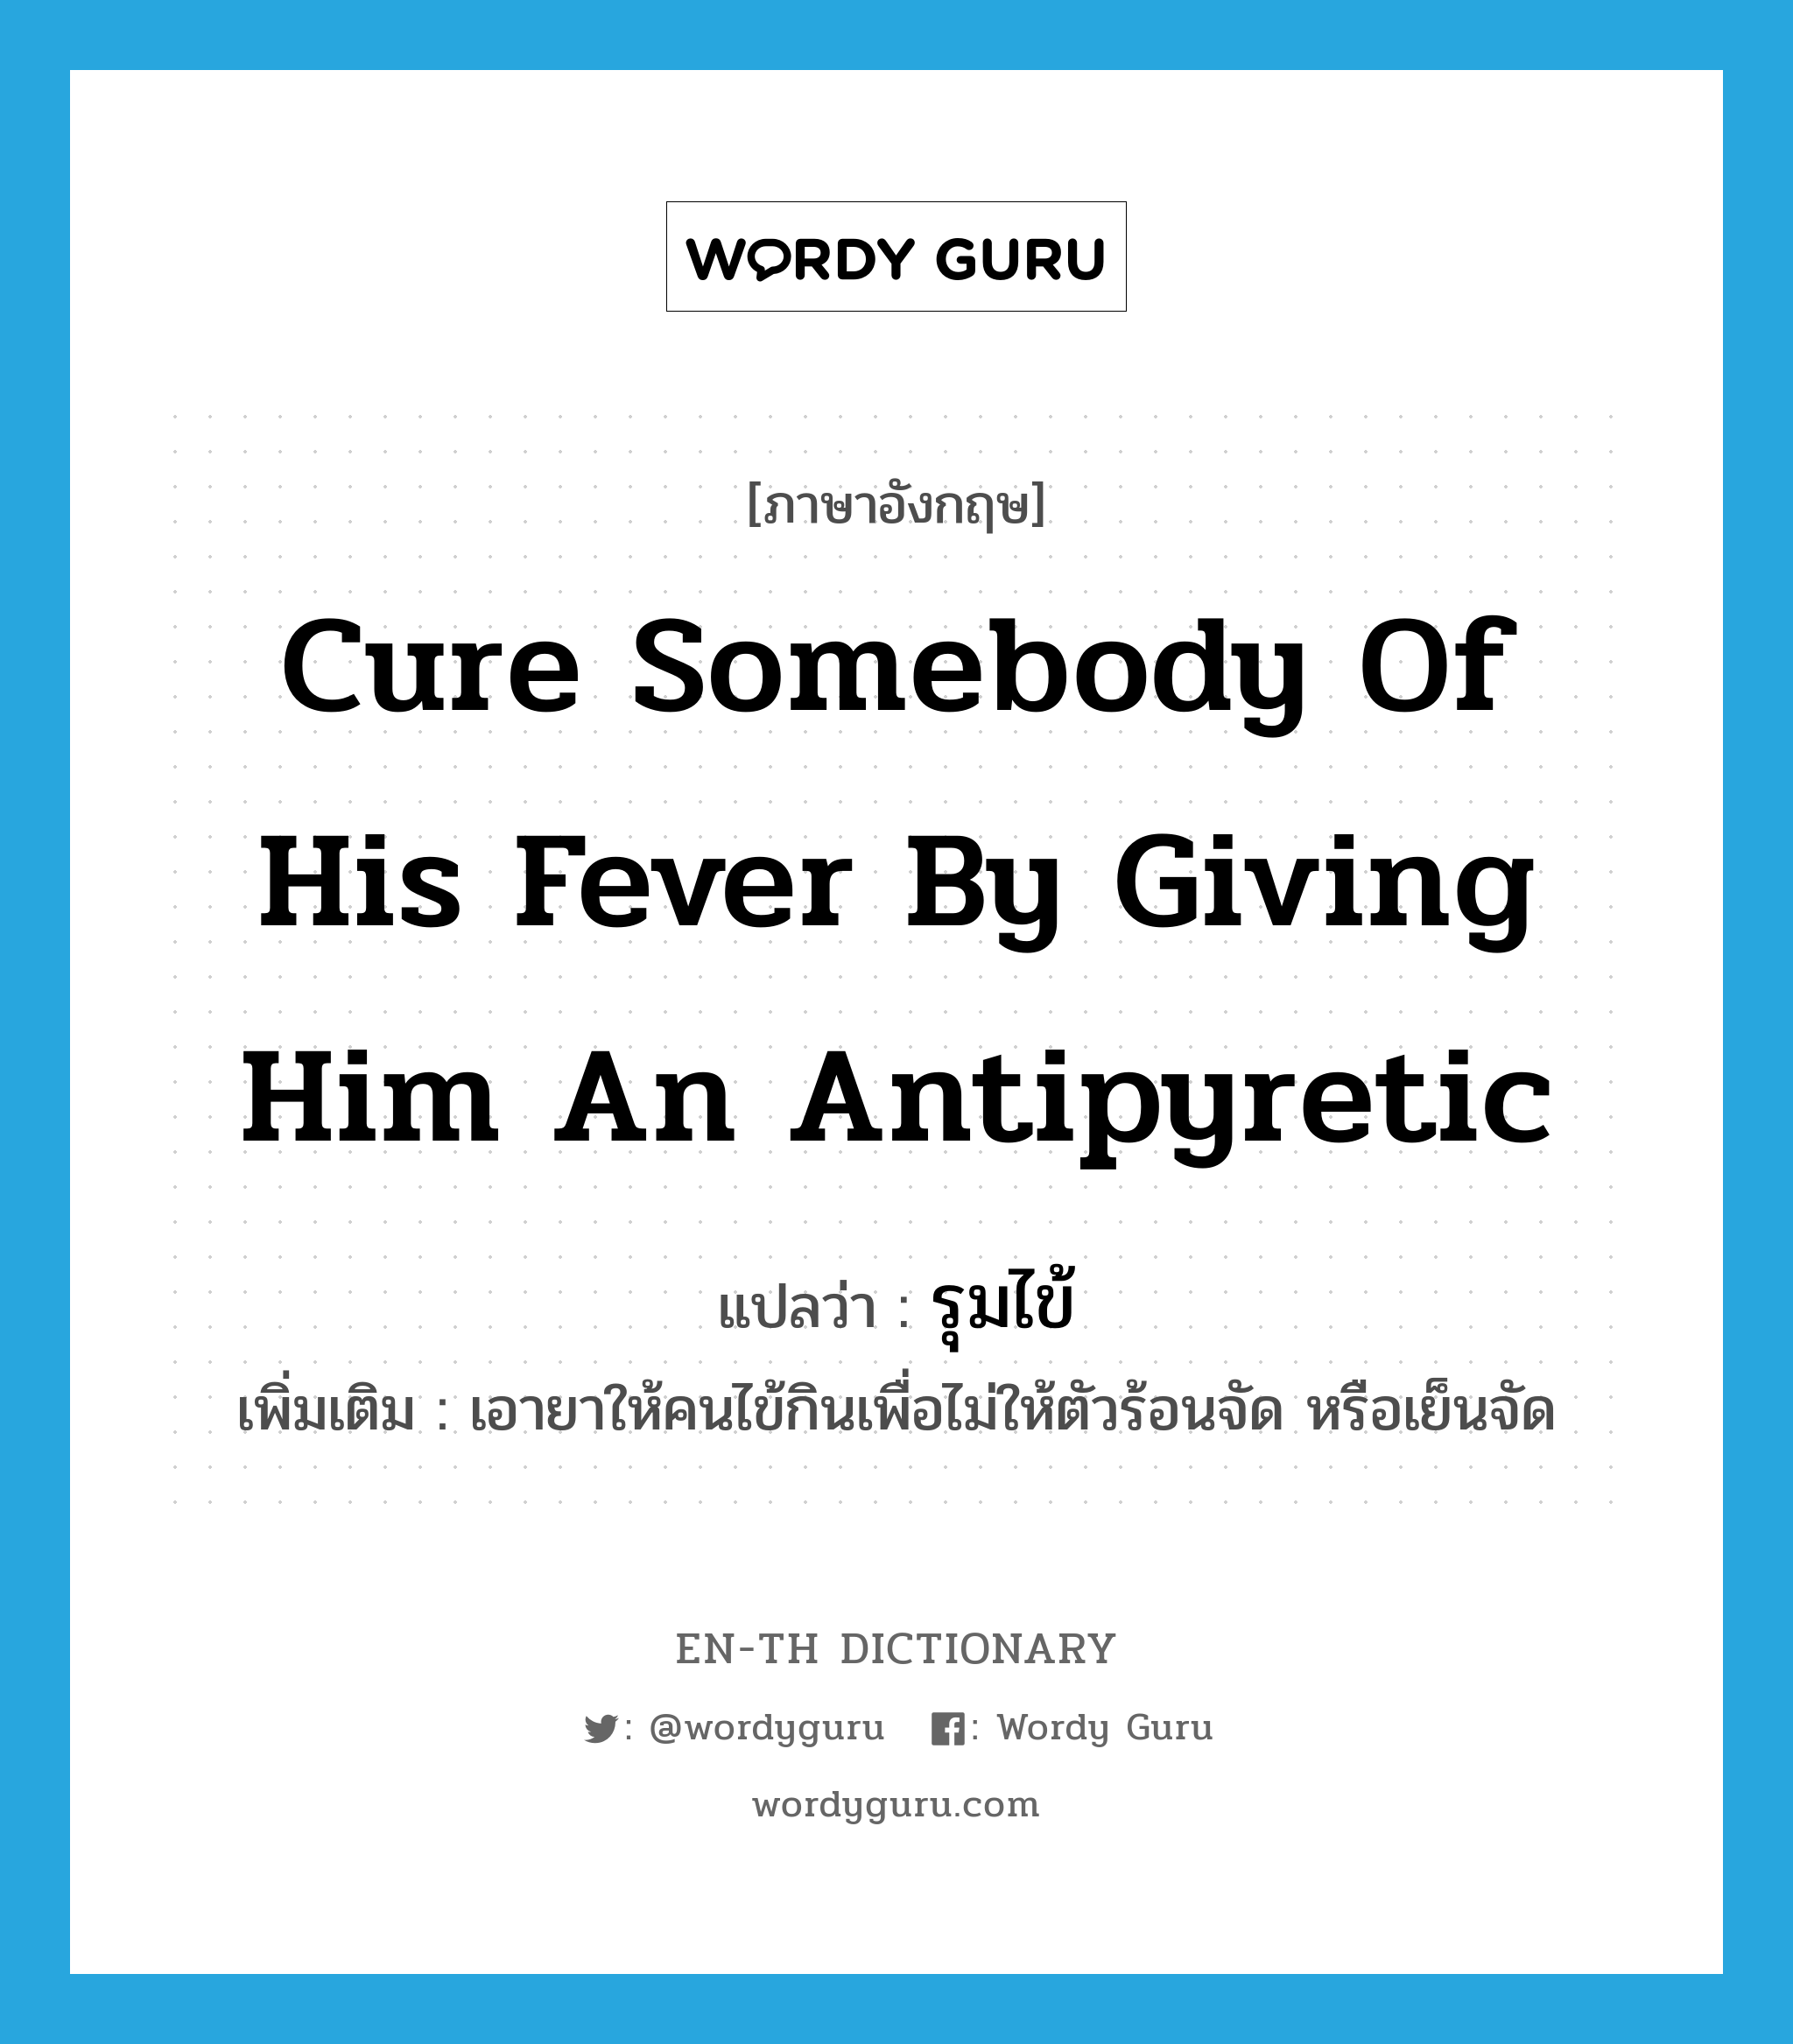 รุมไข้ ภาษาอังกฤษ?, คำศัพท์ภาษาอังกฤษ รุมไข้ แปลว่า cure somebody of his fever by giving him an antipyretic ประเภท V เพิ่มเติม เอายาให้คนไข้กินเพื่อไม่ให้ตัวร้อนจัด หรือเย็นจัด หมวด V